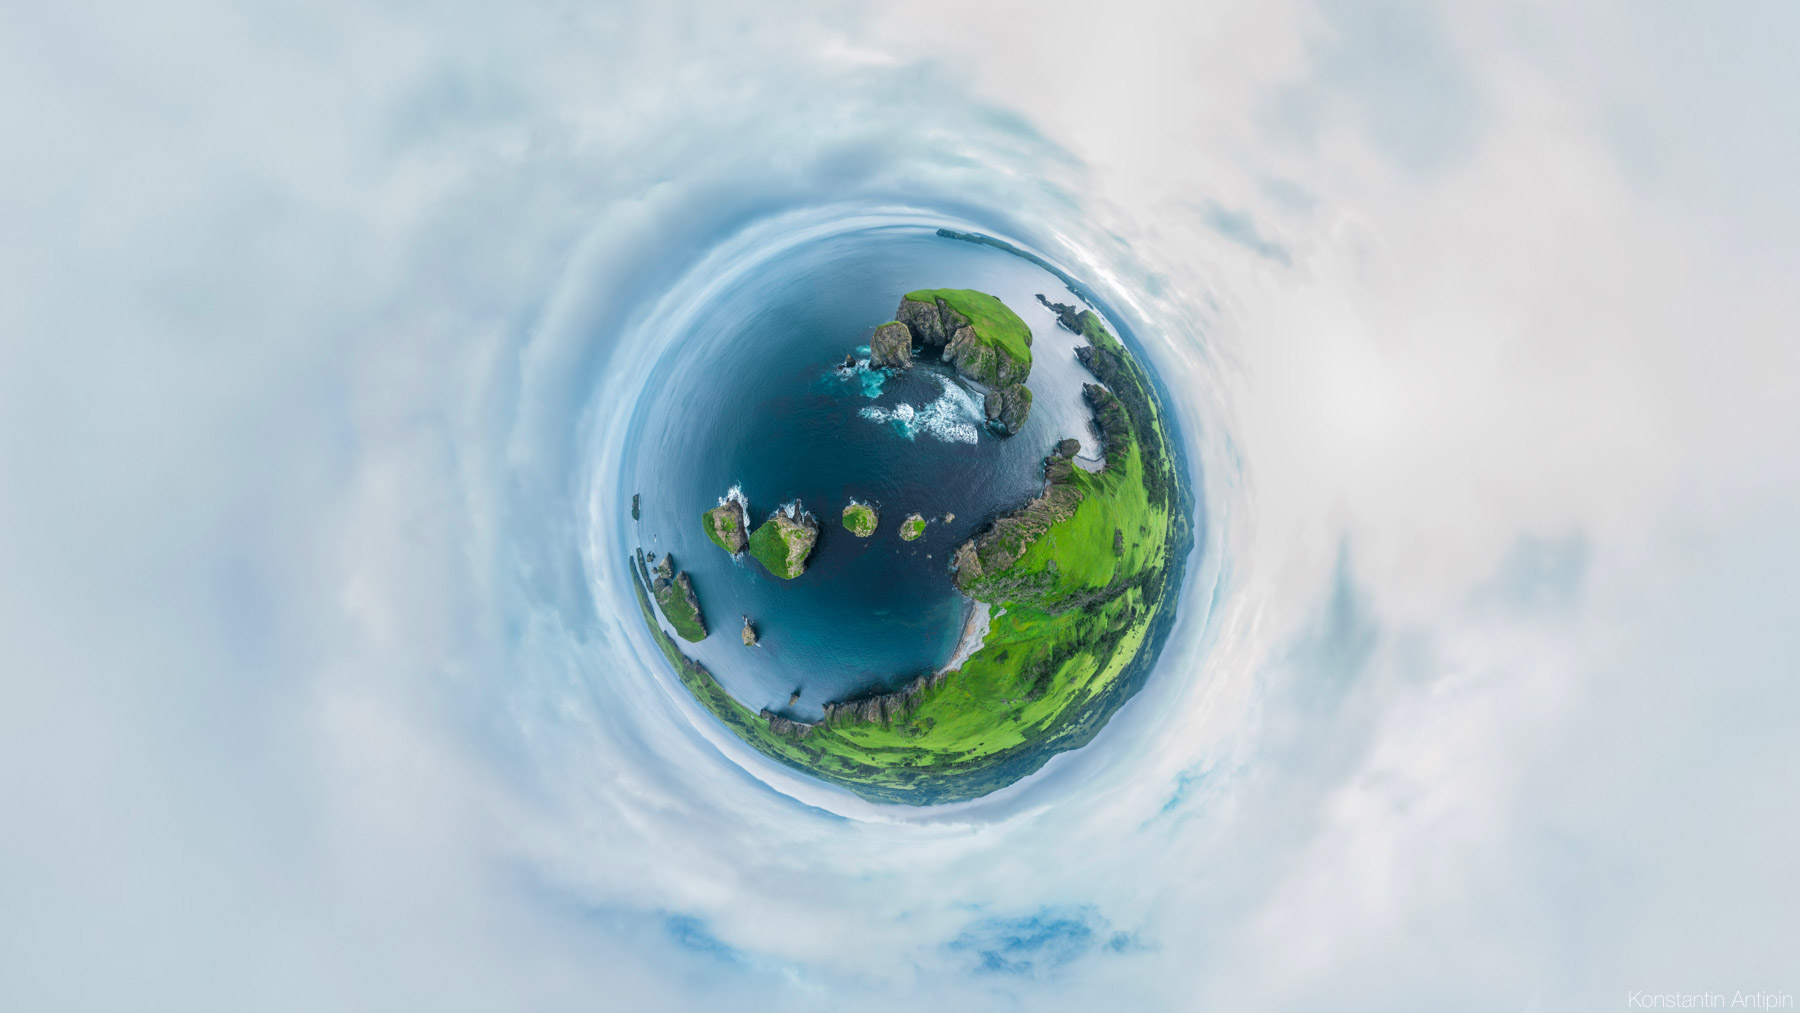 Сферические панорамы Шикотана Панорама, панораме, Бухта, можно, стороны, снята, мысом, бухта, острова, поселение, самое, Хромова, противоположной, видно, прячется, второе, Крабозаводское, просто, живописный, большое